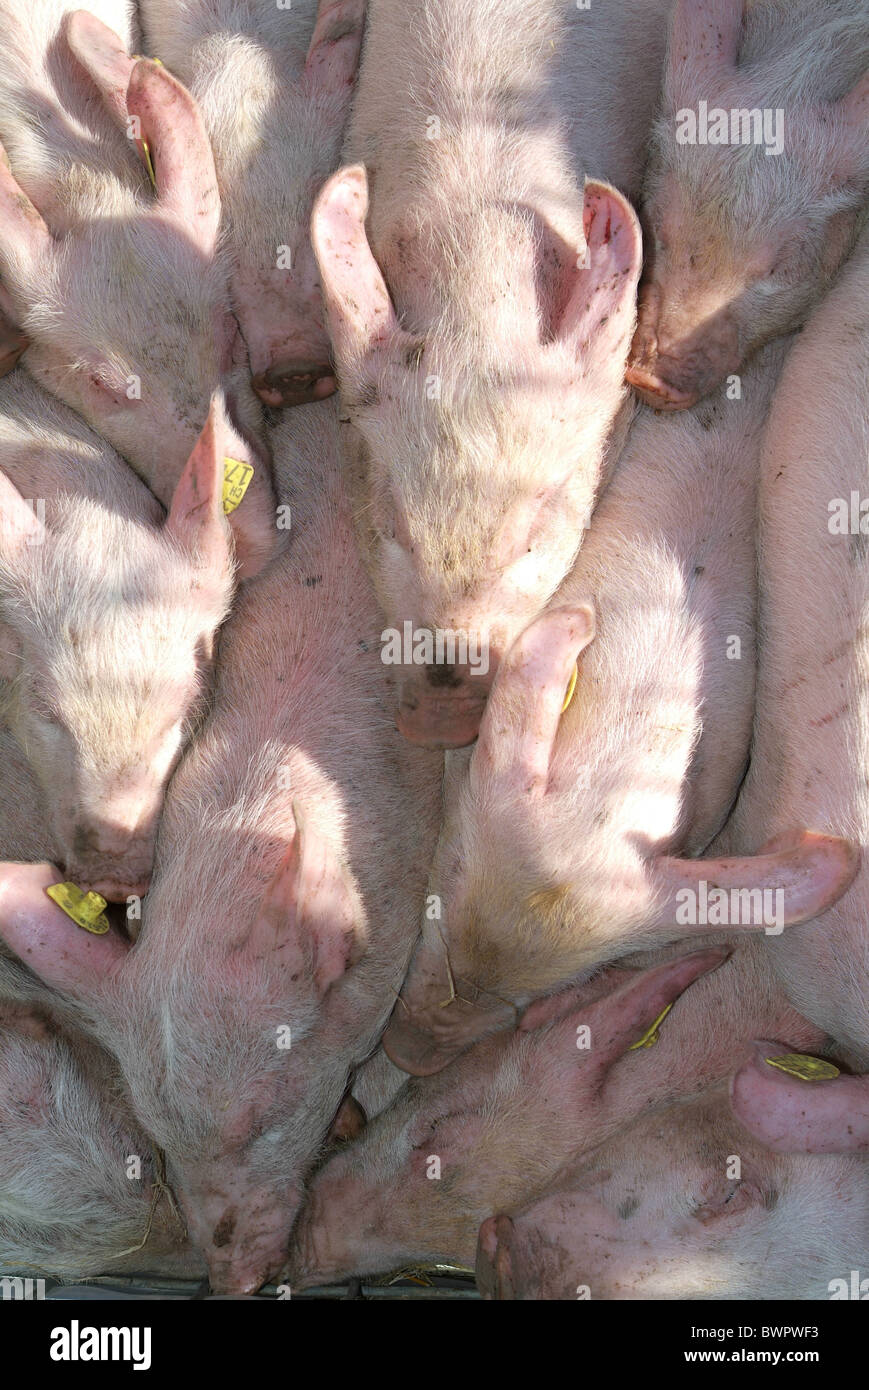 Los cerdos LECHONES Lechones agobiante escasez de tocino de cerdo granja agricultura La agricultura alimentos animales de cría animal pi Foto de stock